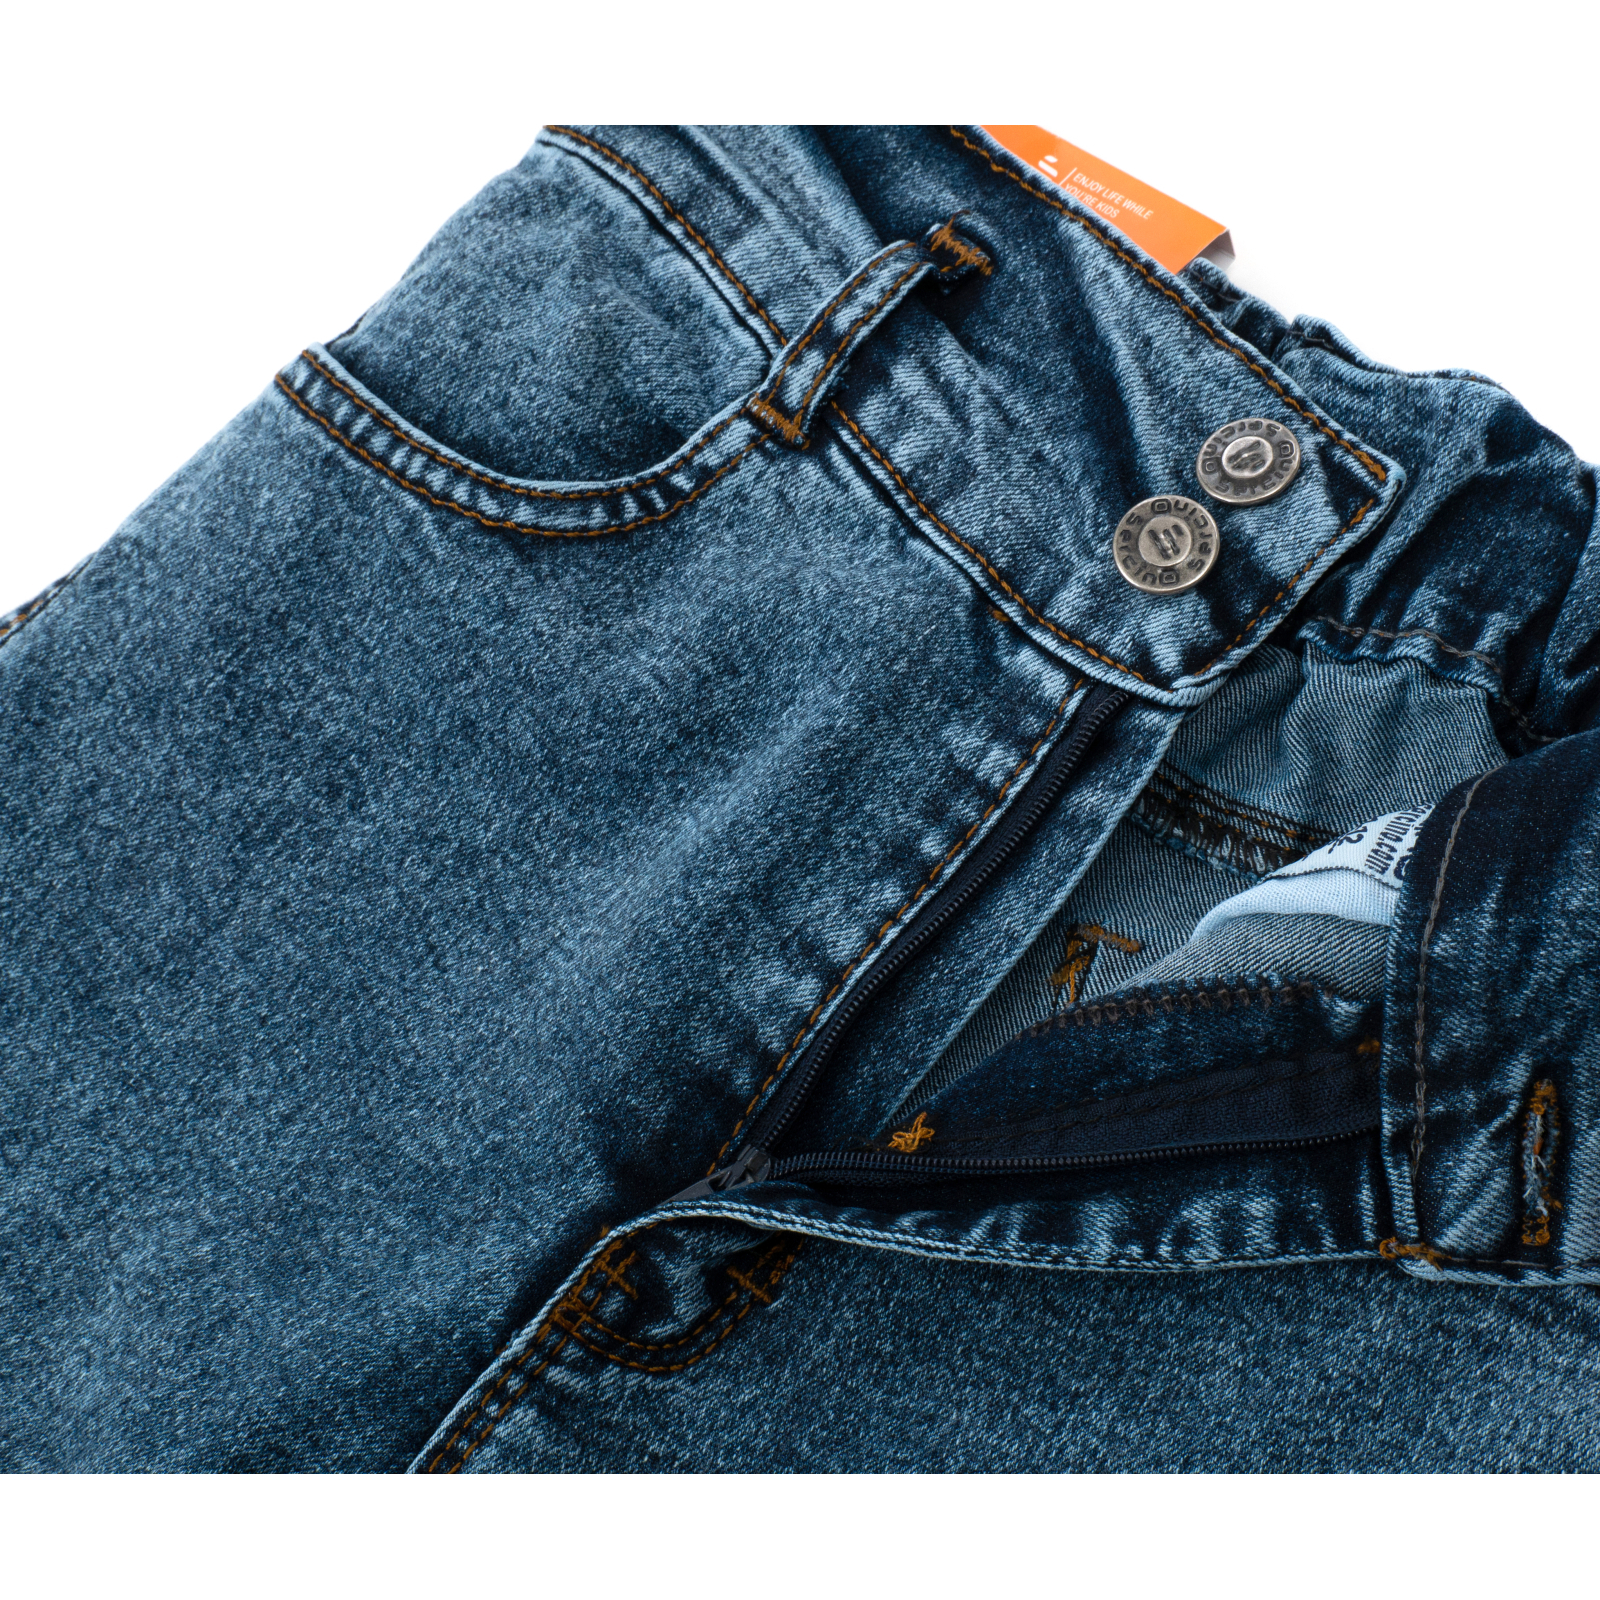 Джинсы Sercino с карманами (59654-170G-blue) изображение 6